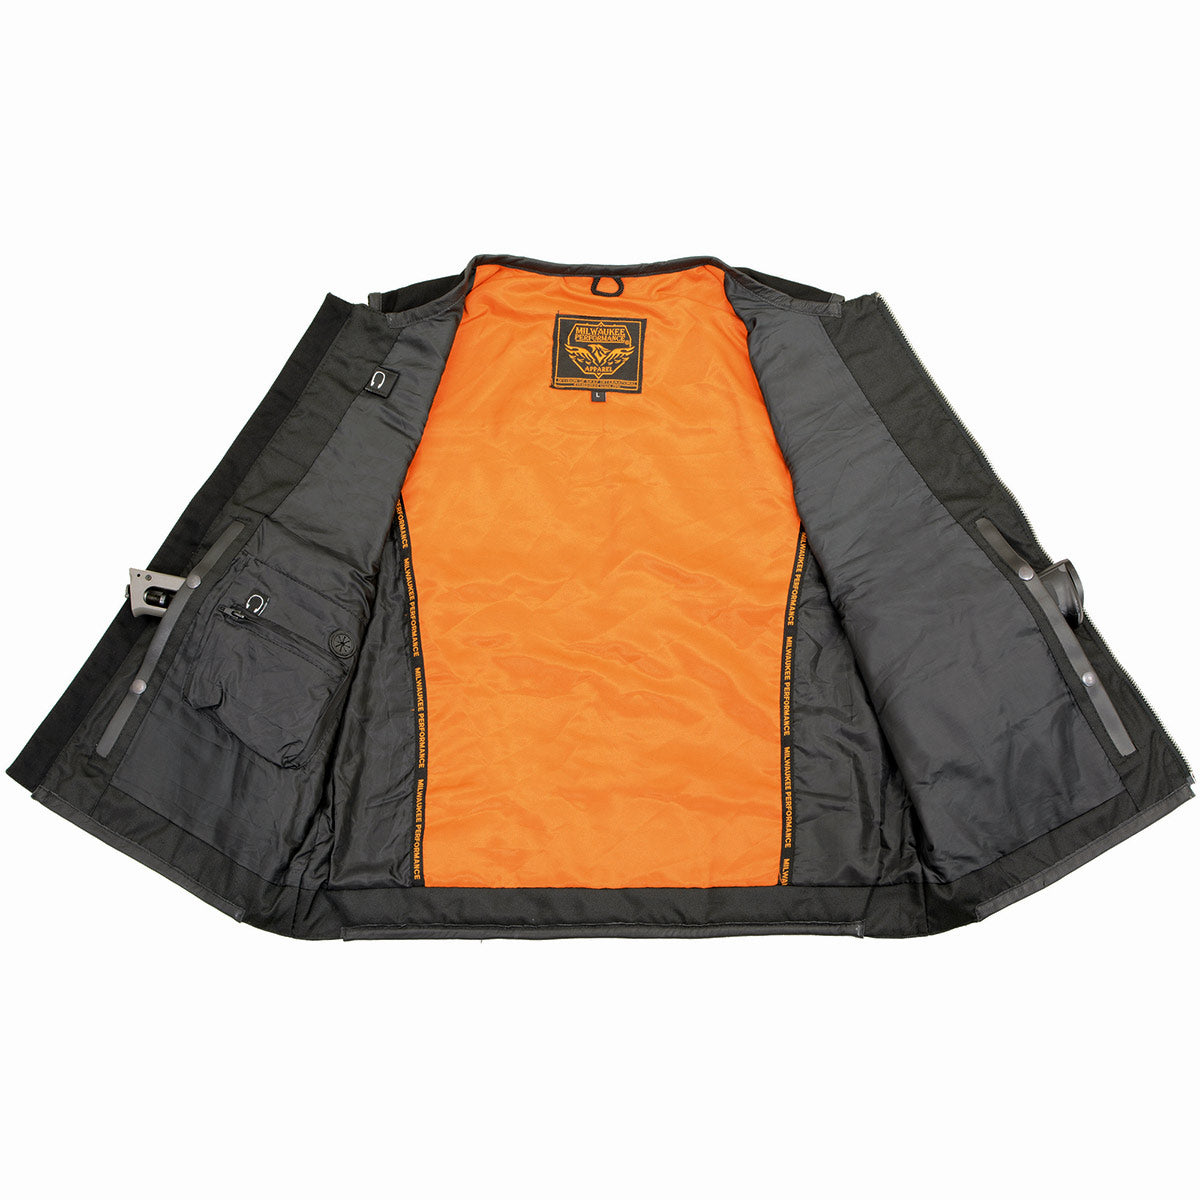 Multi Pocket Utility Leather Jacket - Black